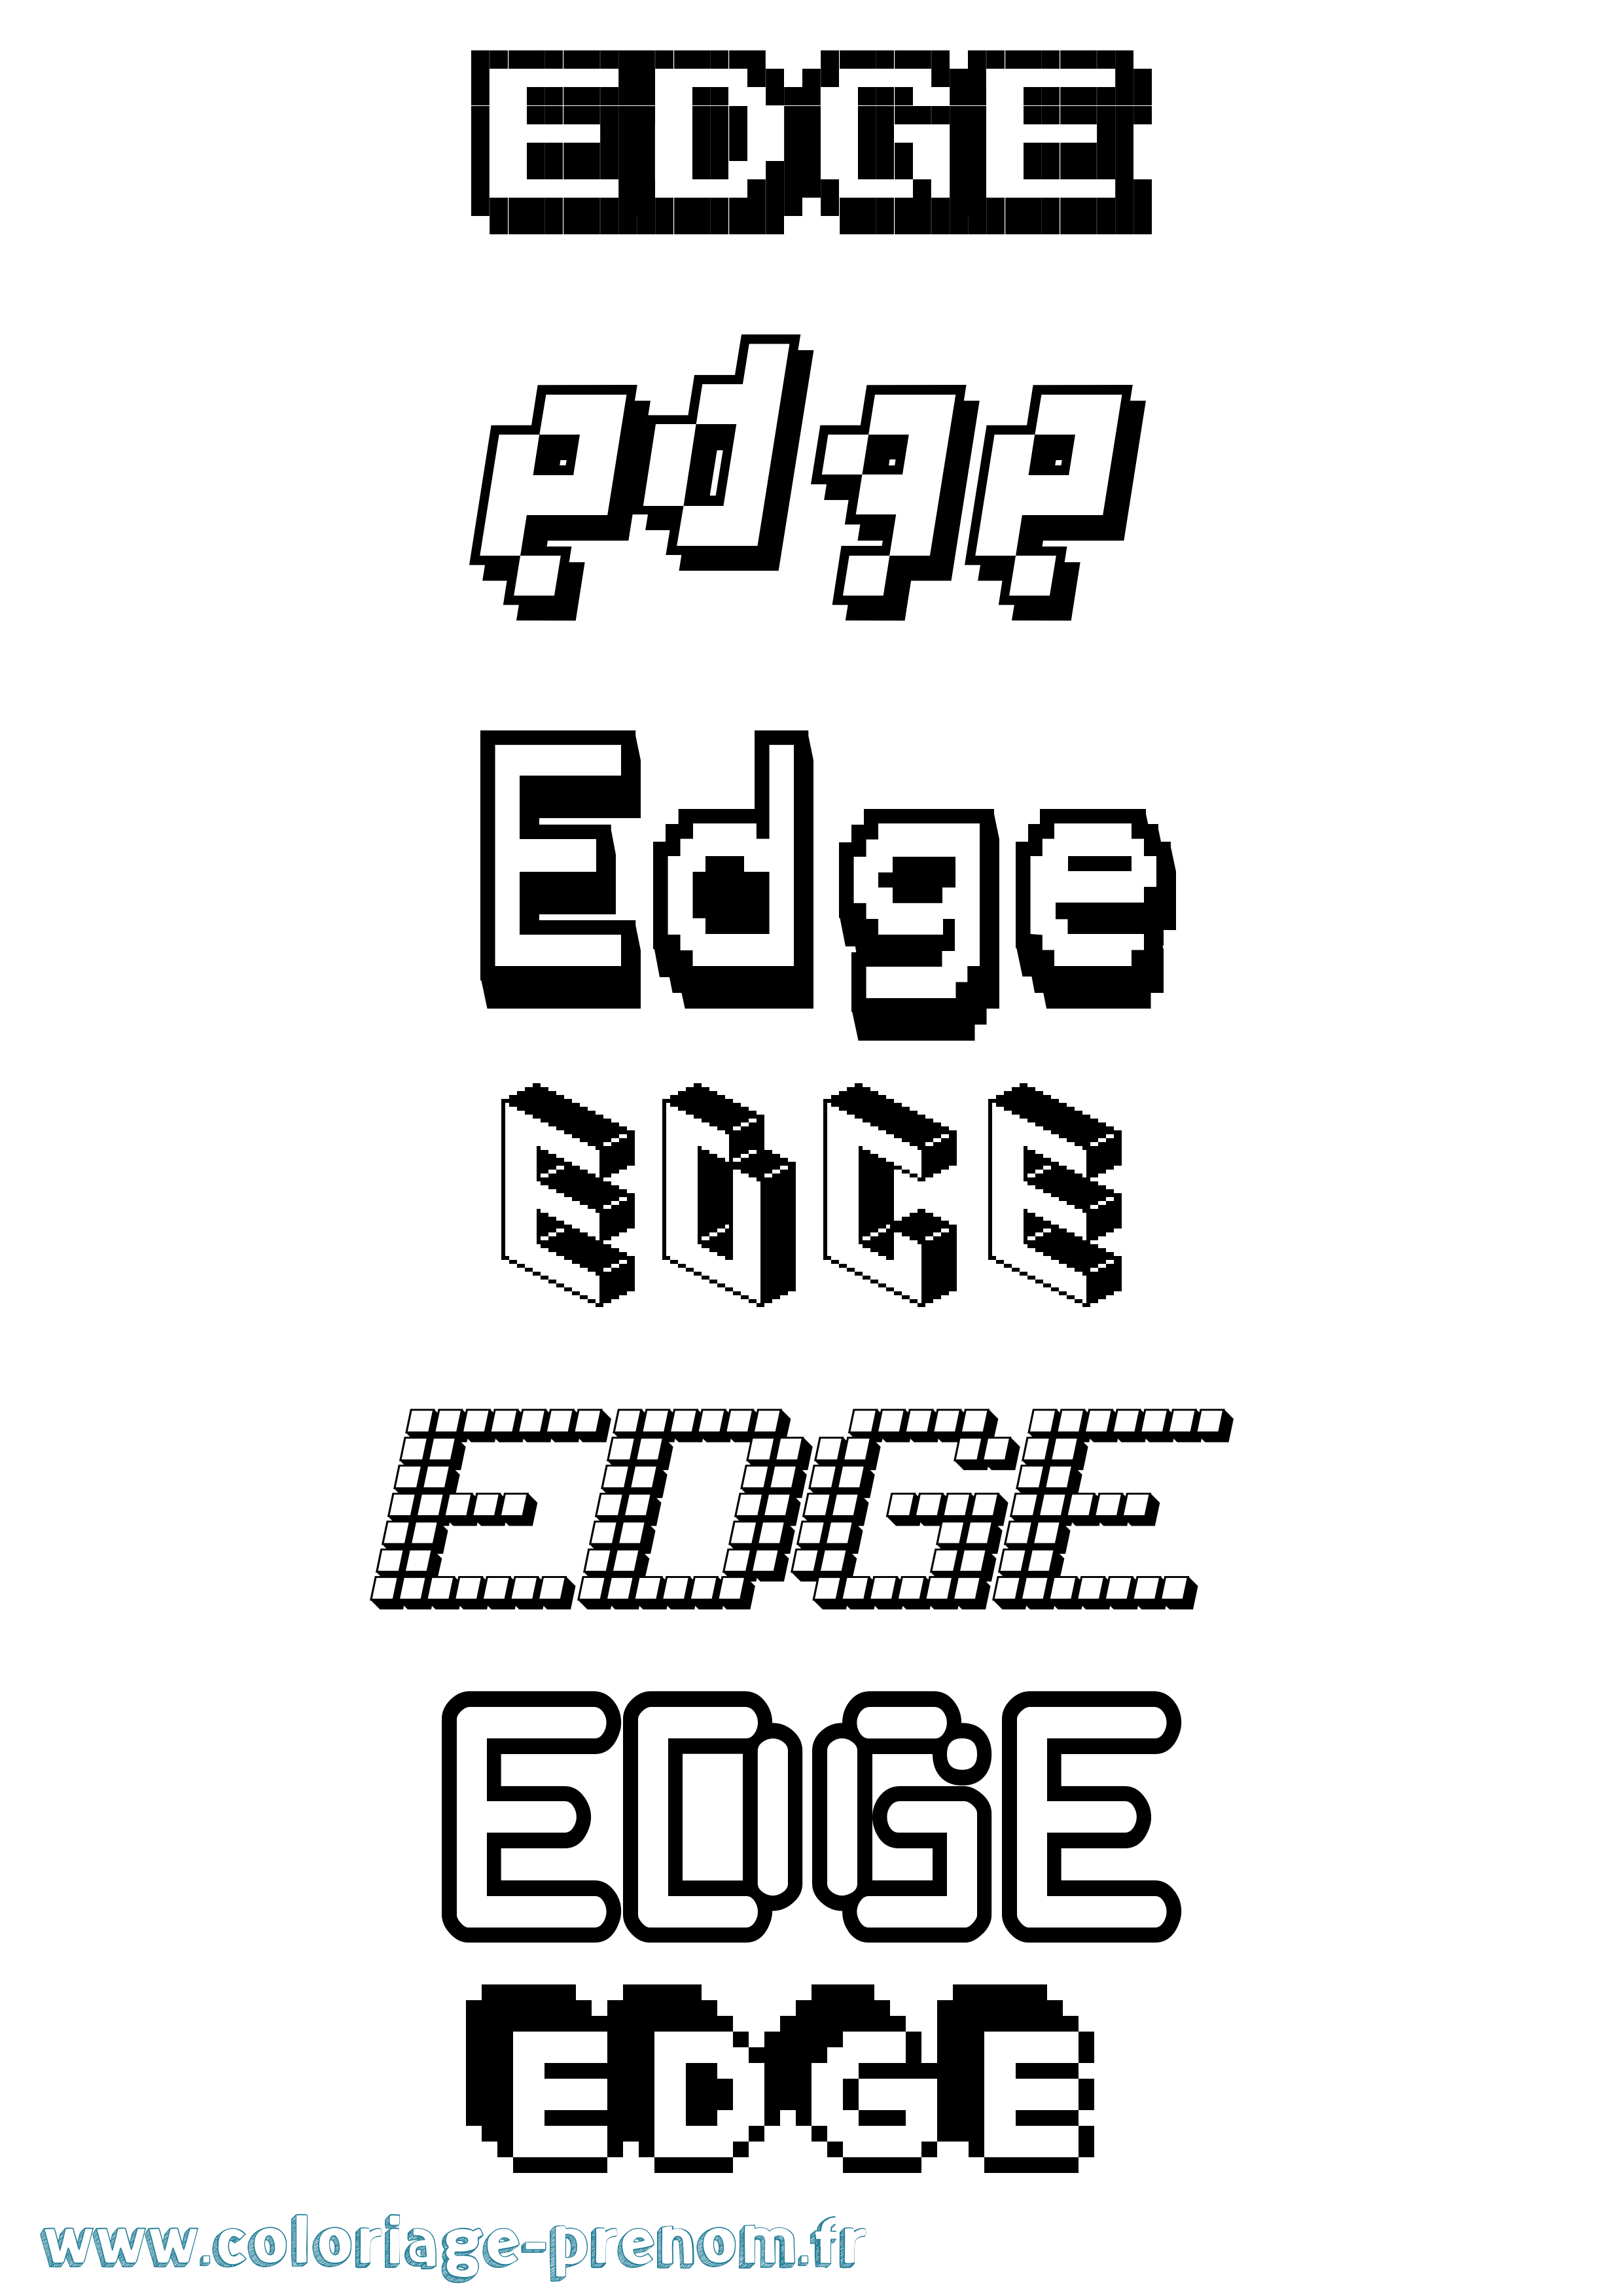 Coloriage prénom Edge Pixel